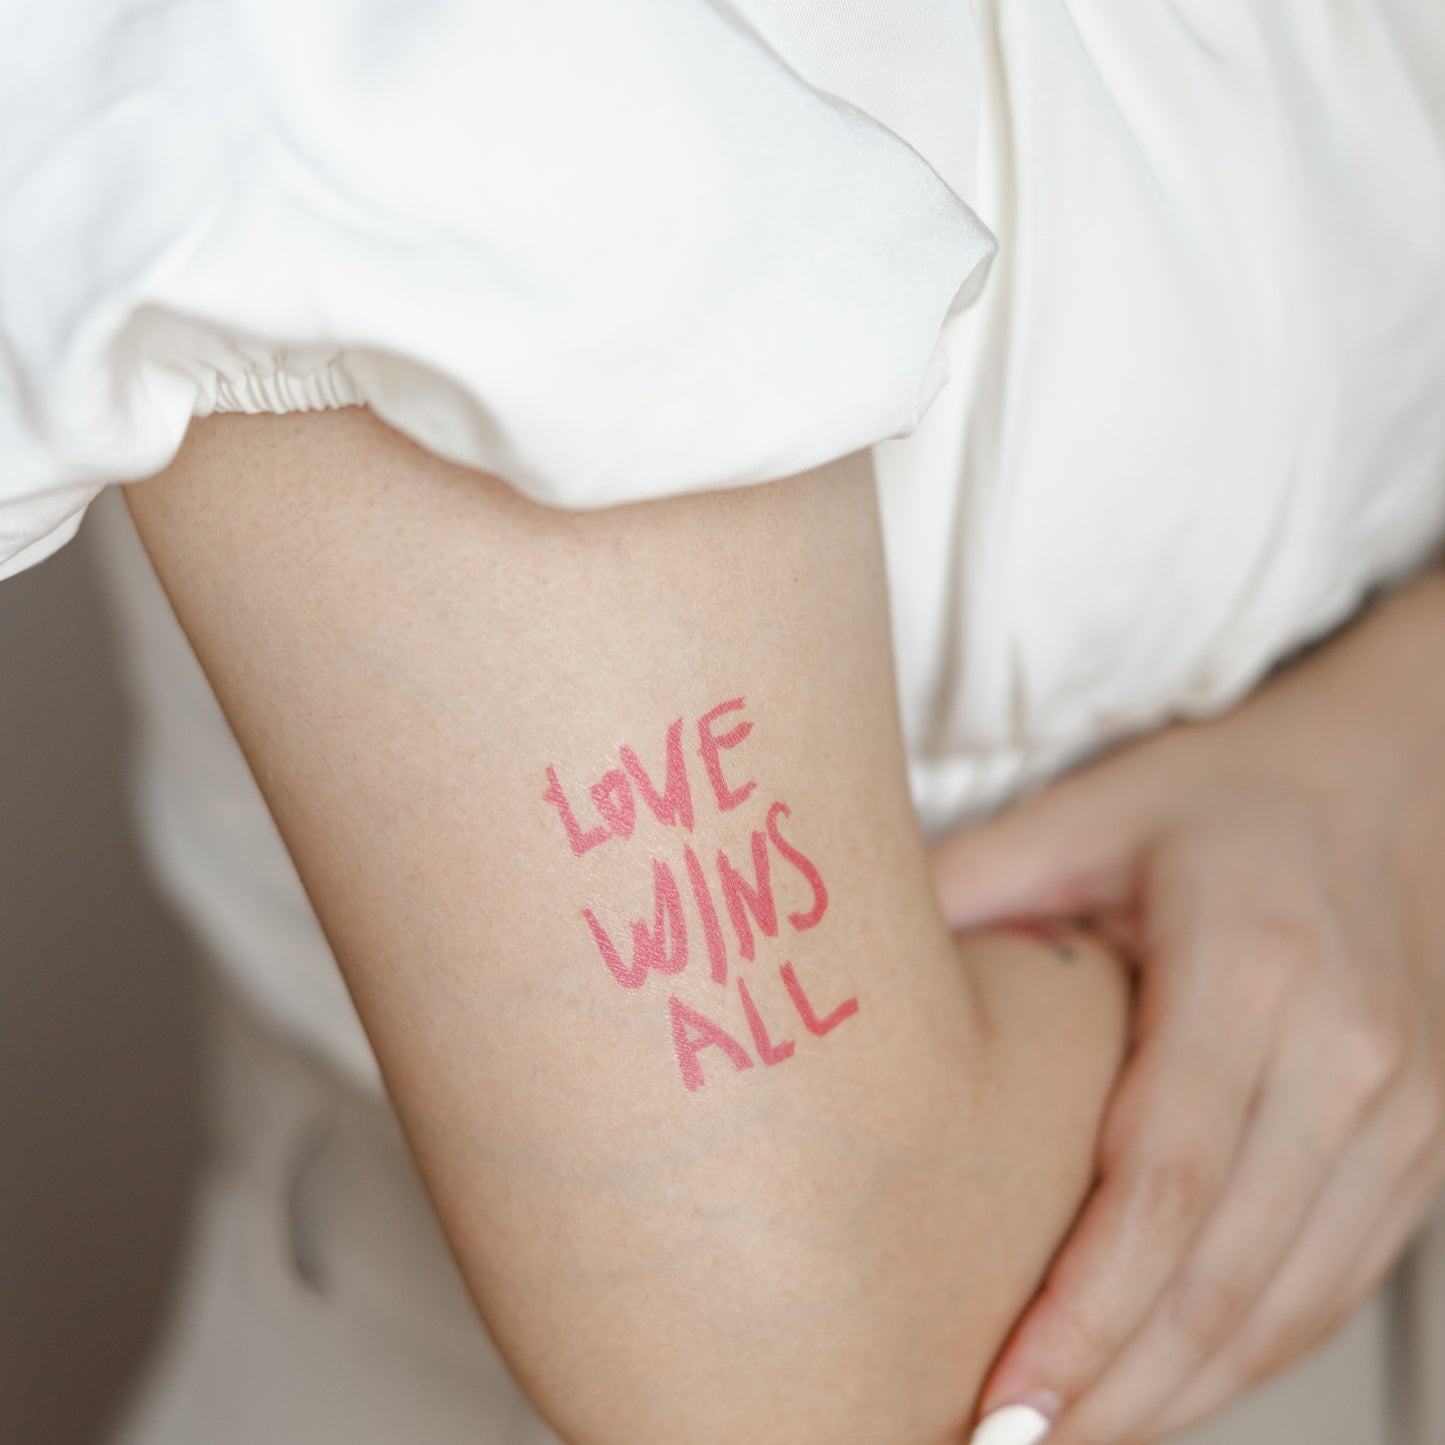 love wins all | IU - temporary tattoo sticker